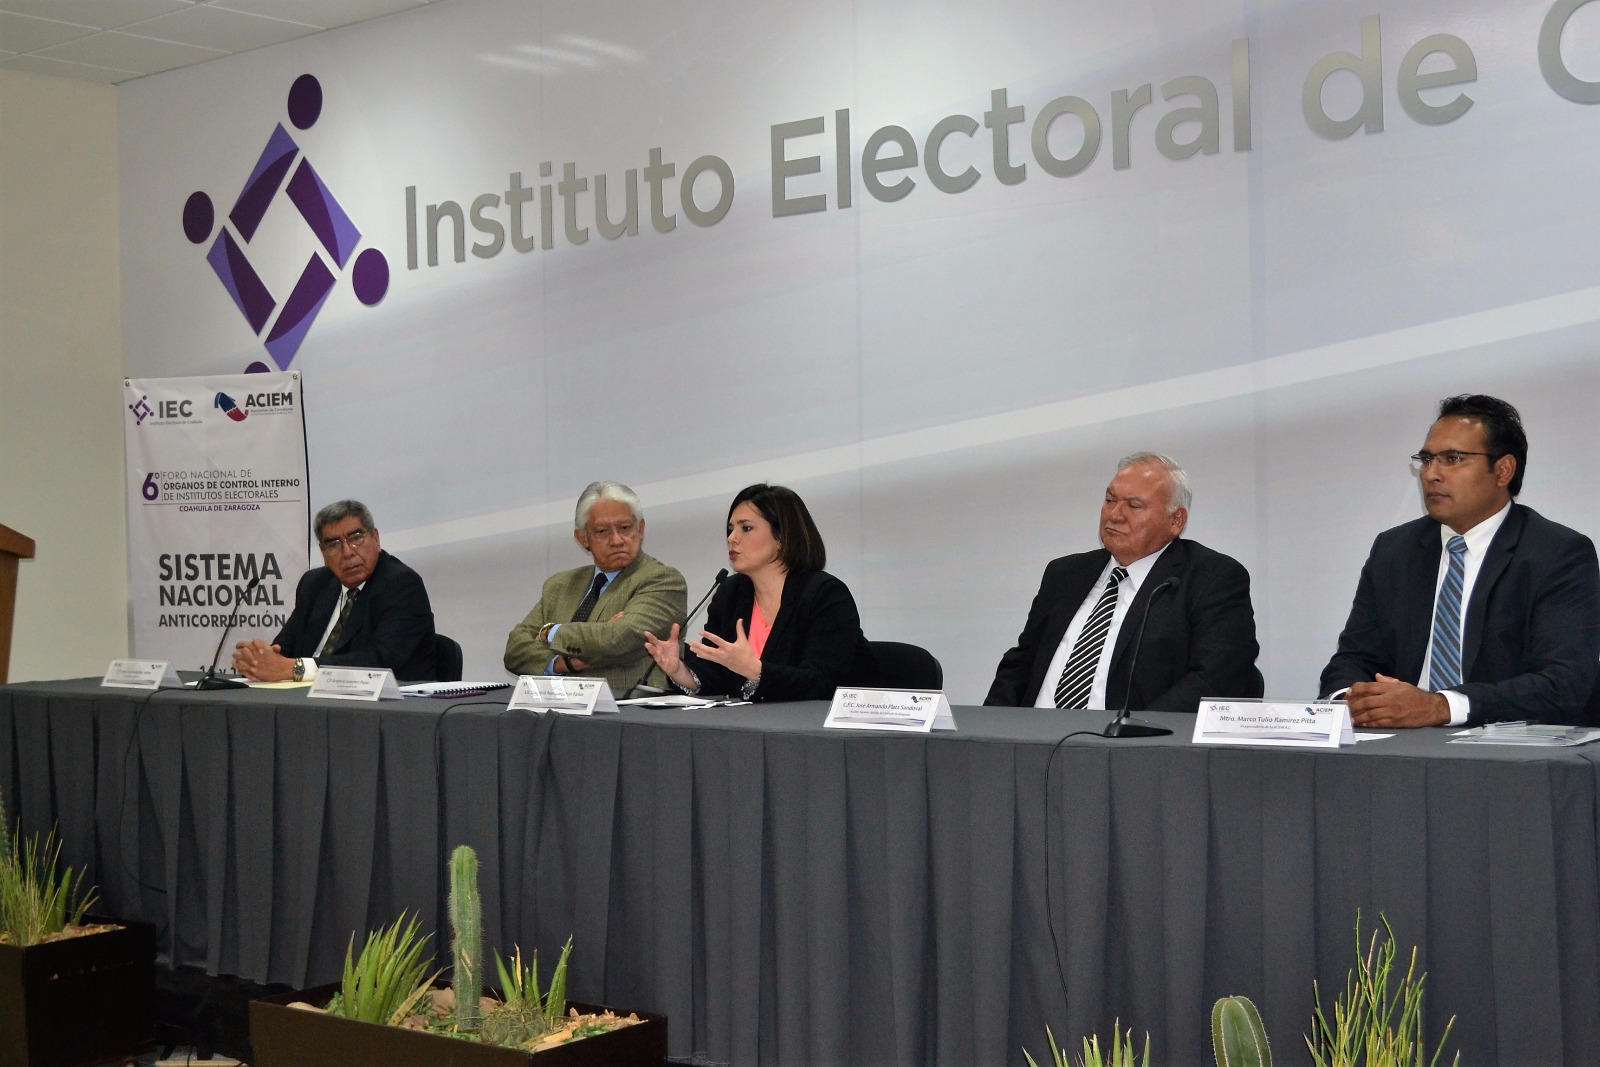    FORO NACIONAL DE ÓRGANOS DE CONTROL INTERNO DE LOS INSTITUTOS ELECTORALES